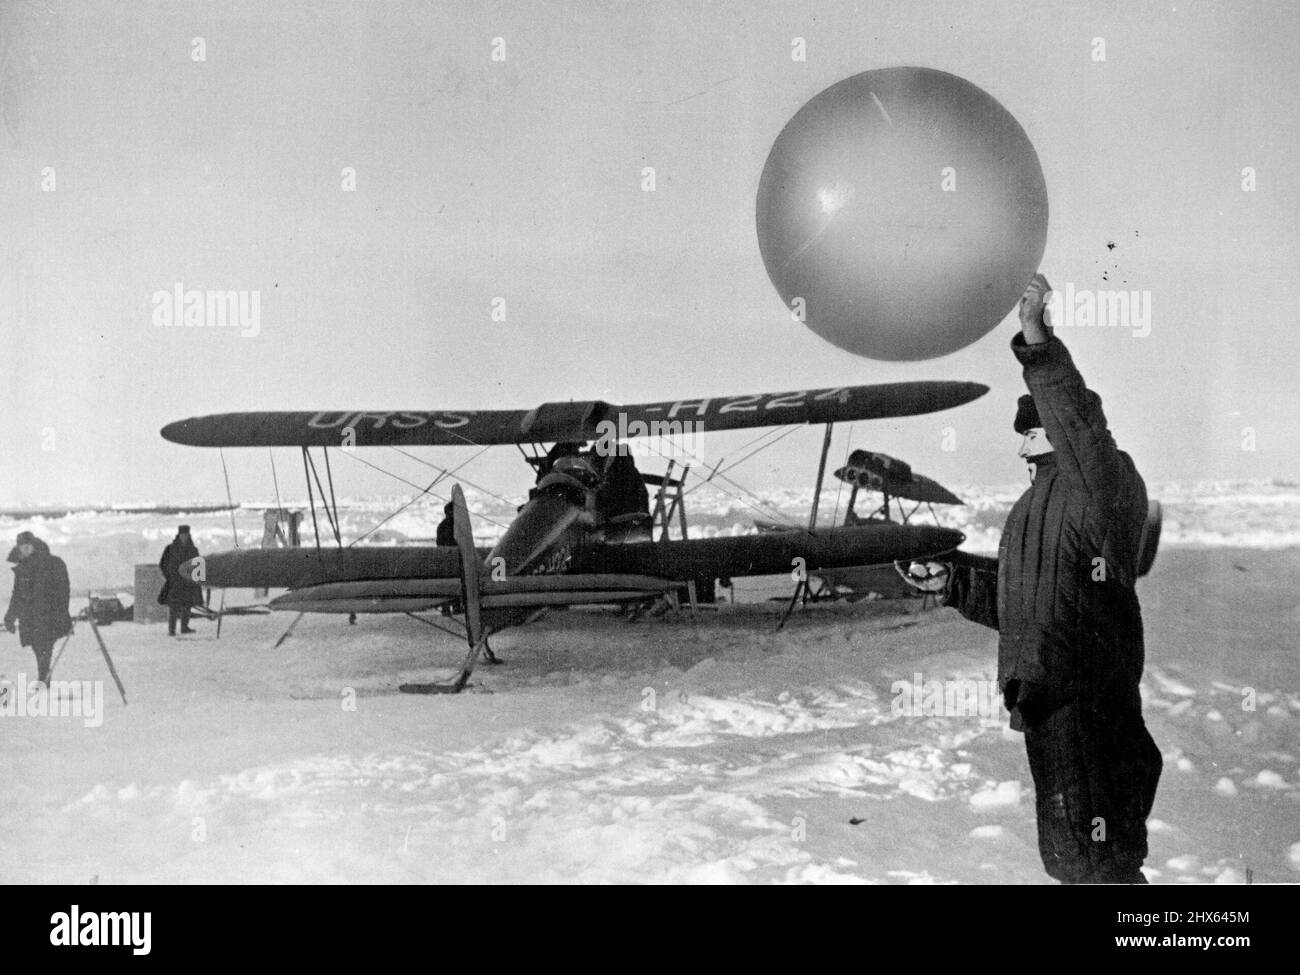 Il 19 febbraio, alle 5:30 la stazione di spostamento 'Polo Nord' ha terminato il suo lavoro. Il quartetto di erole Papanin è stato rimosso dal ghiaccio che sgocciola nel Mare di Groenlandia dagli equipaggi dei due rompighiaccio, 'Taimir' e 'Murman'. Maggio 14, 1938. Foto Stock